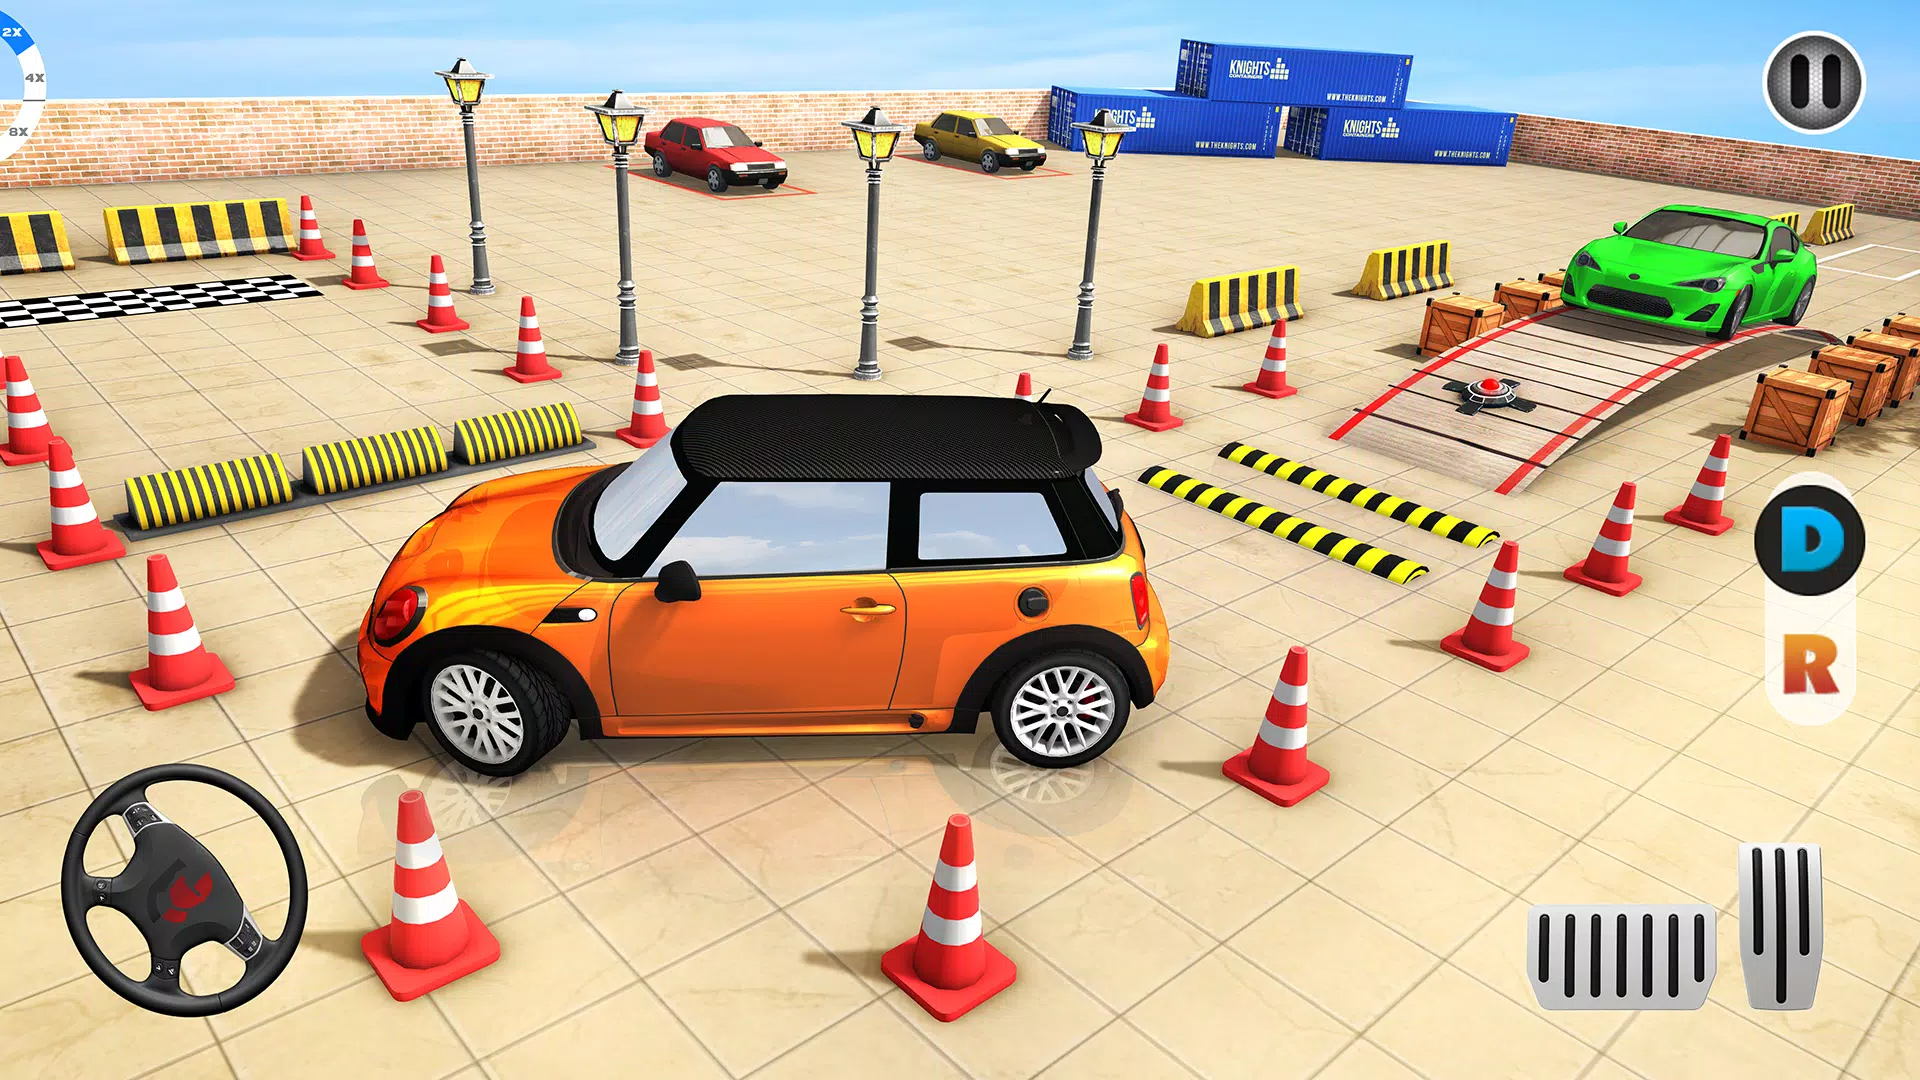 العاب سيارات: Car Parking 3D for Android - APK Download